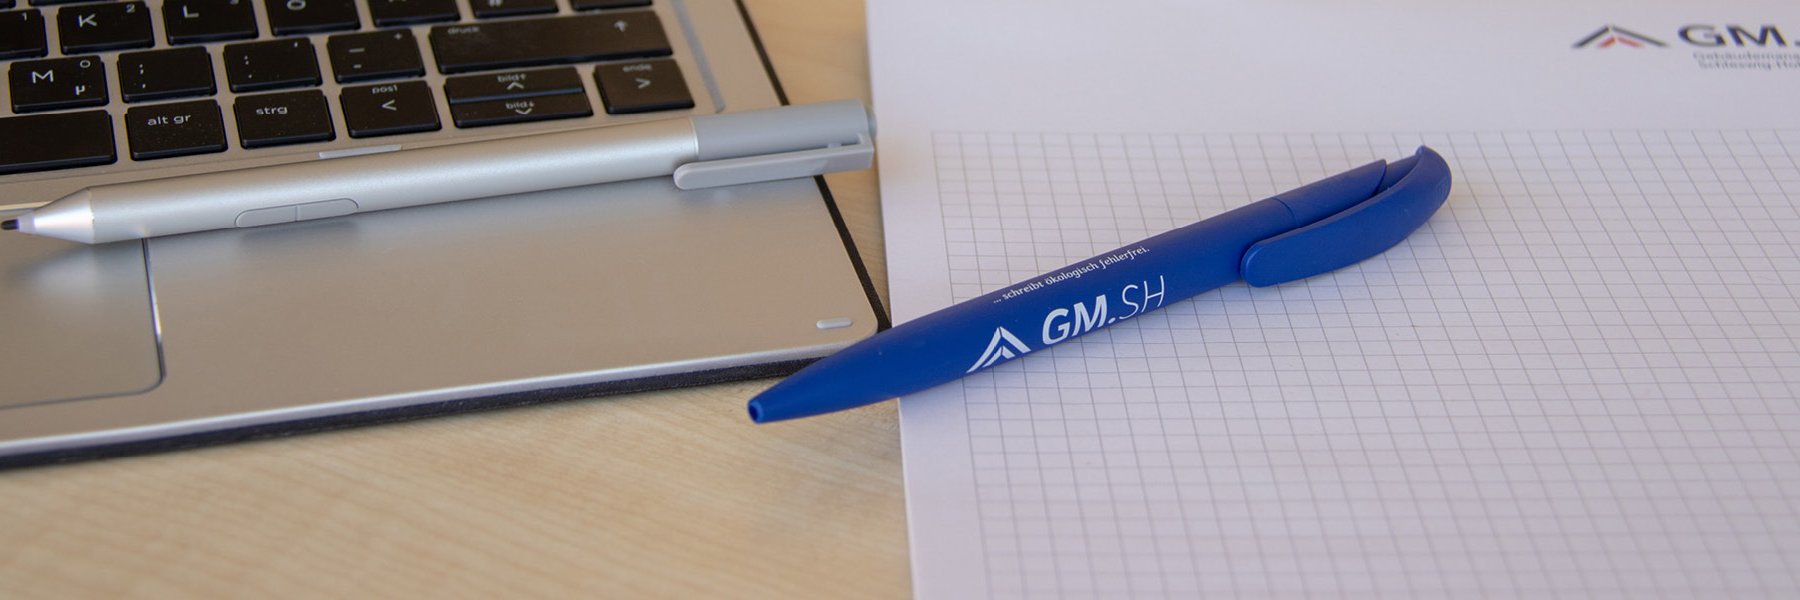 Kugelschreiber, Laptop und GMSH-Schreibblock